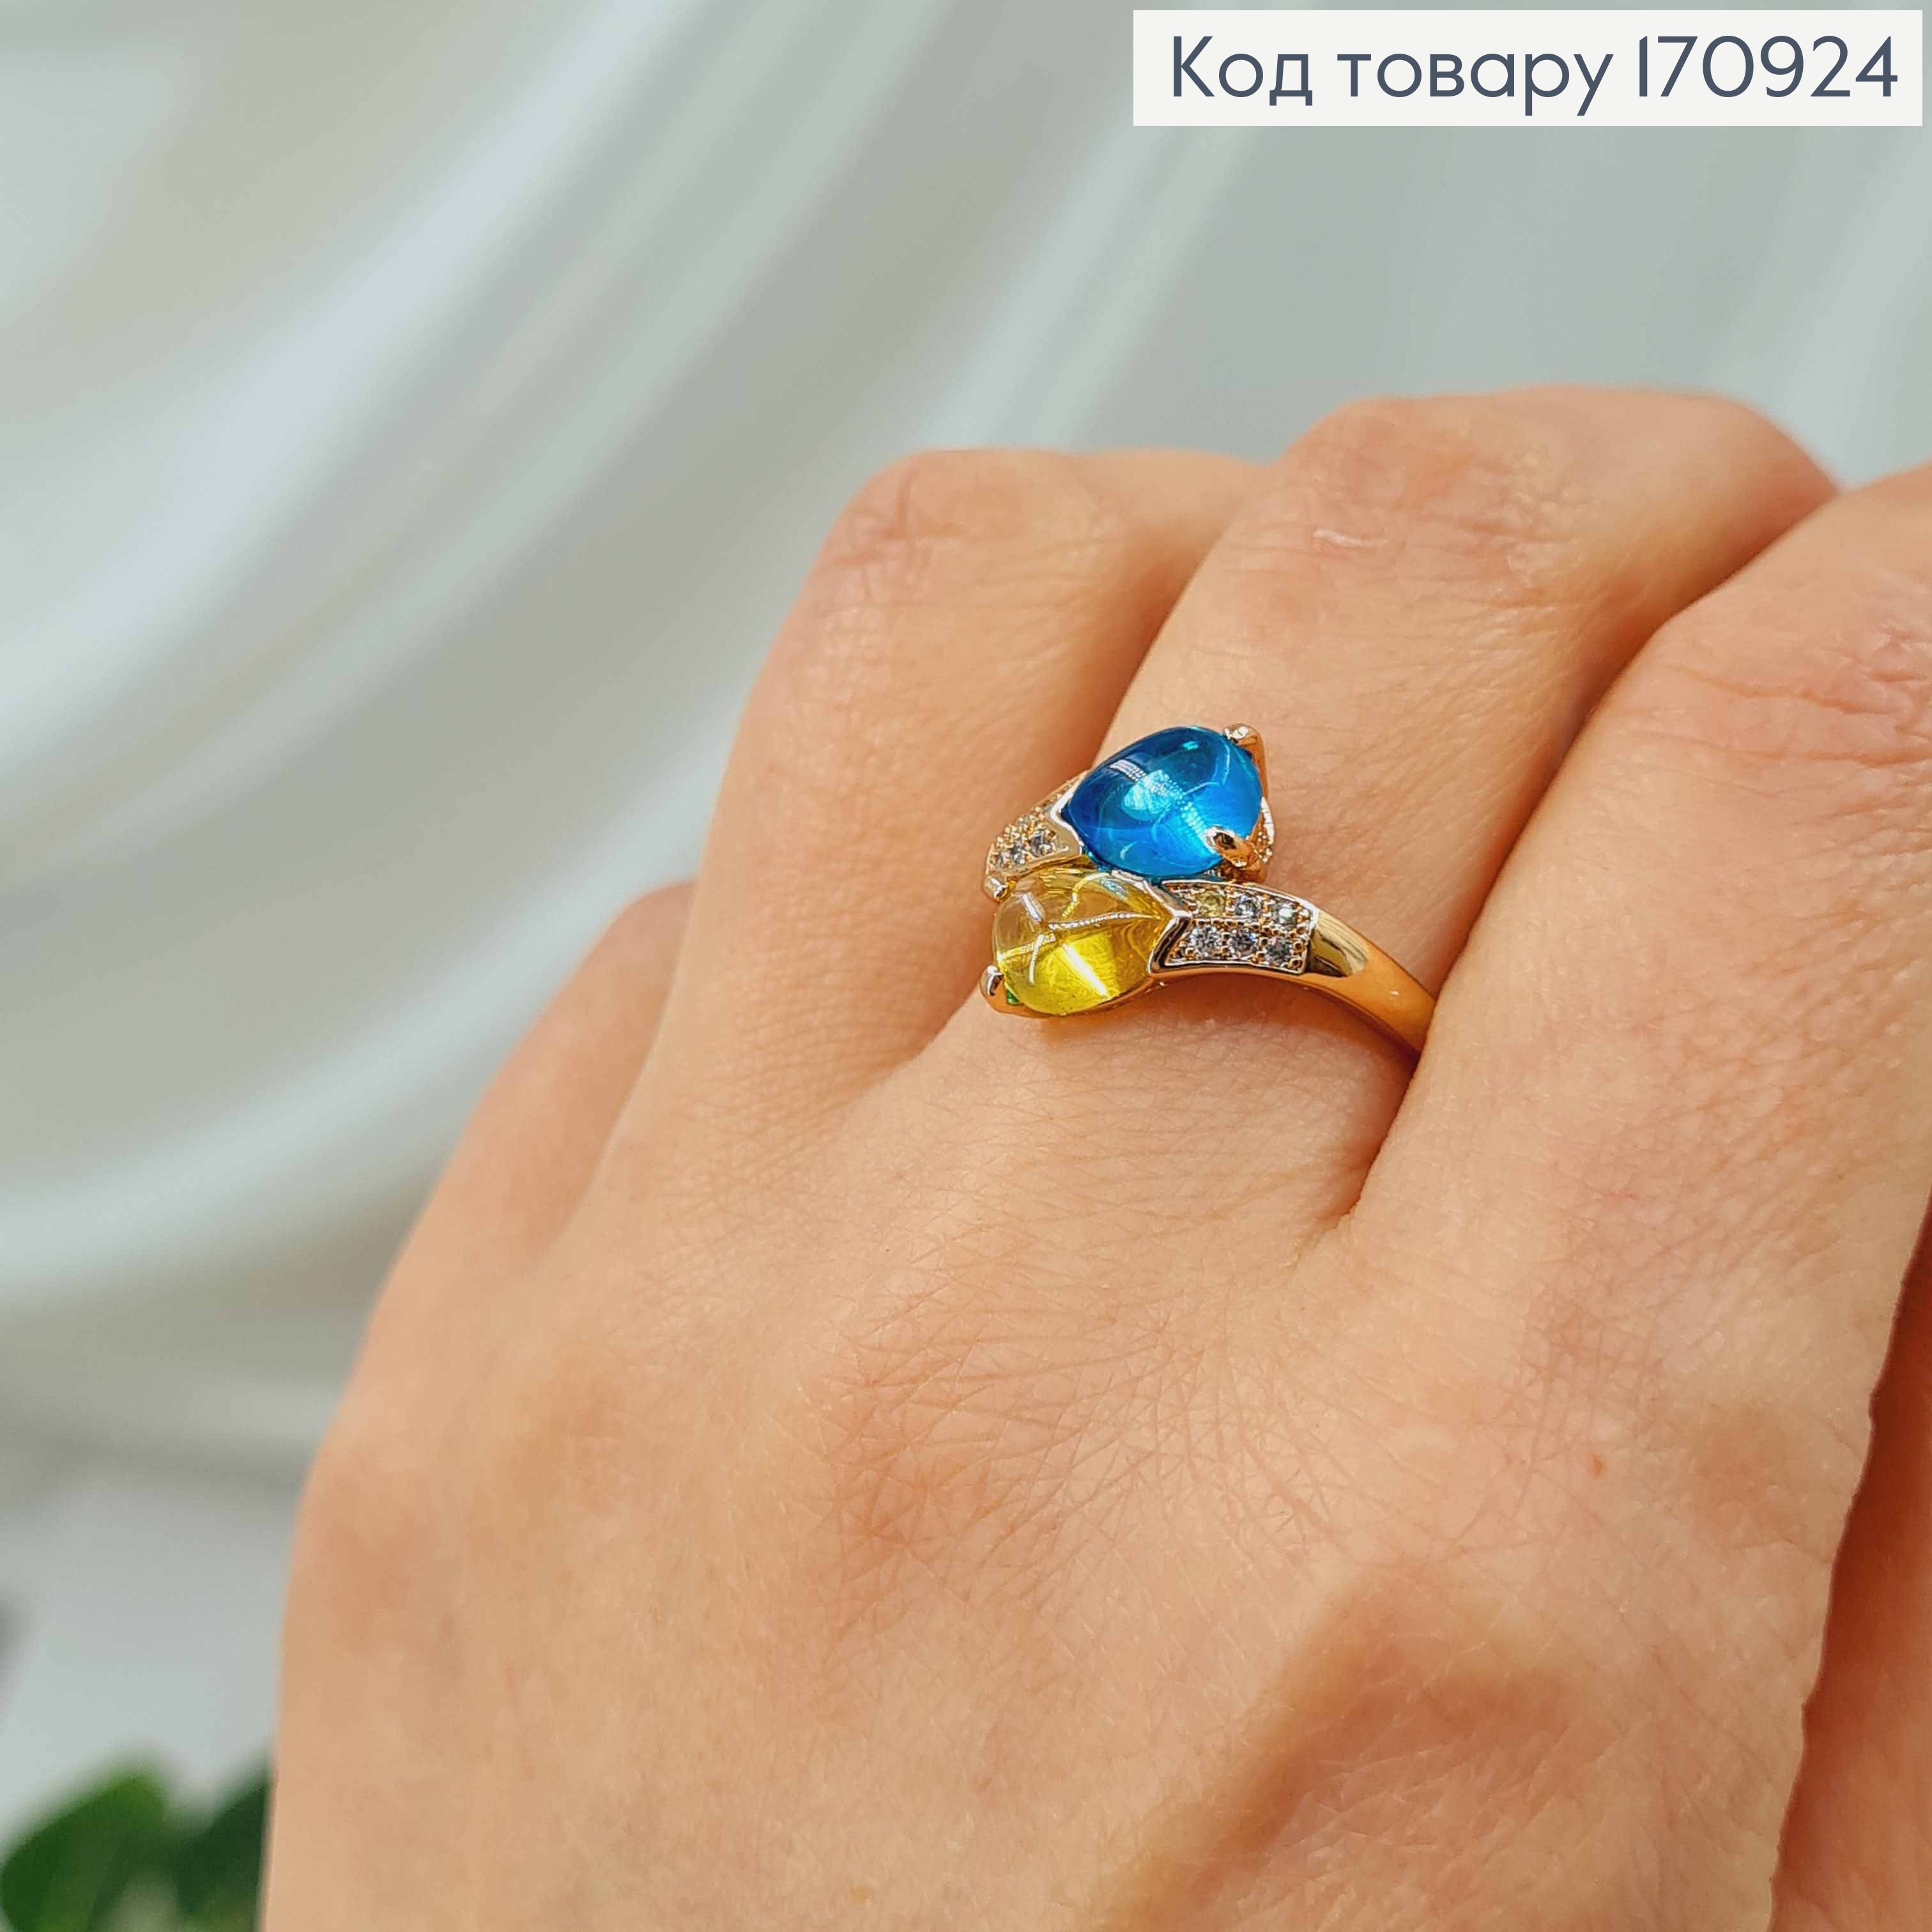 Кольцо с синим и желтым кристалликом, в камнях, Xuping 18К. 170924 фото 2